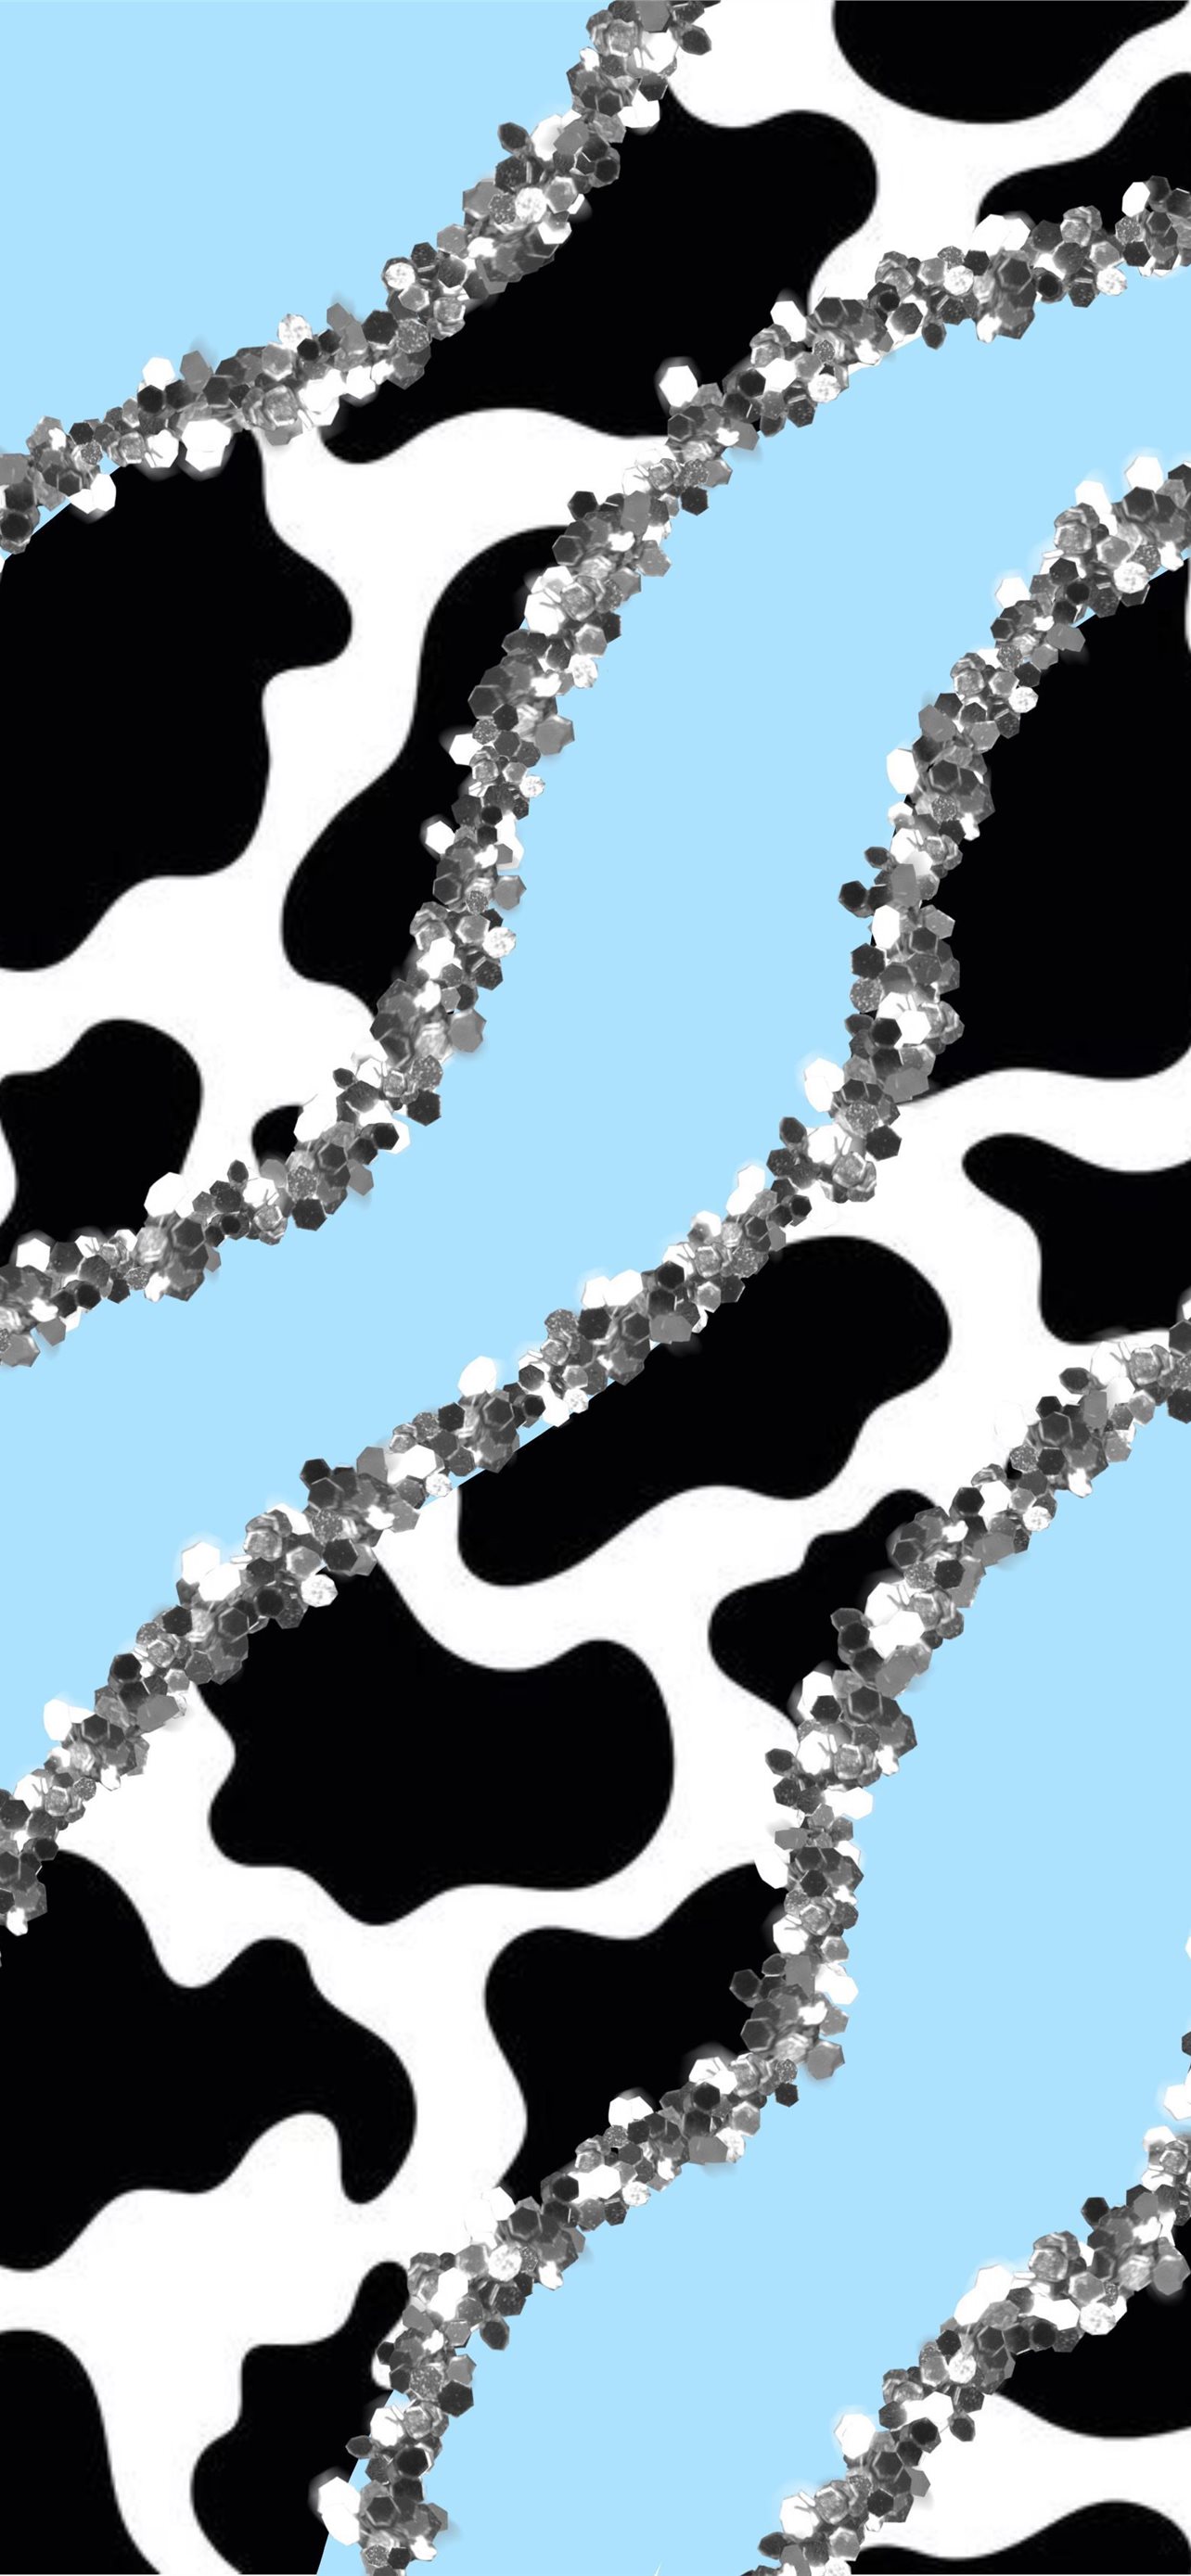 moo wallpaper  Cow print wallpaper, Cow wallpaper, Animal print